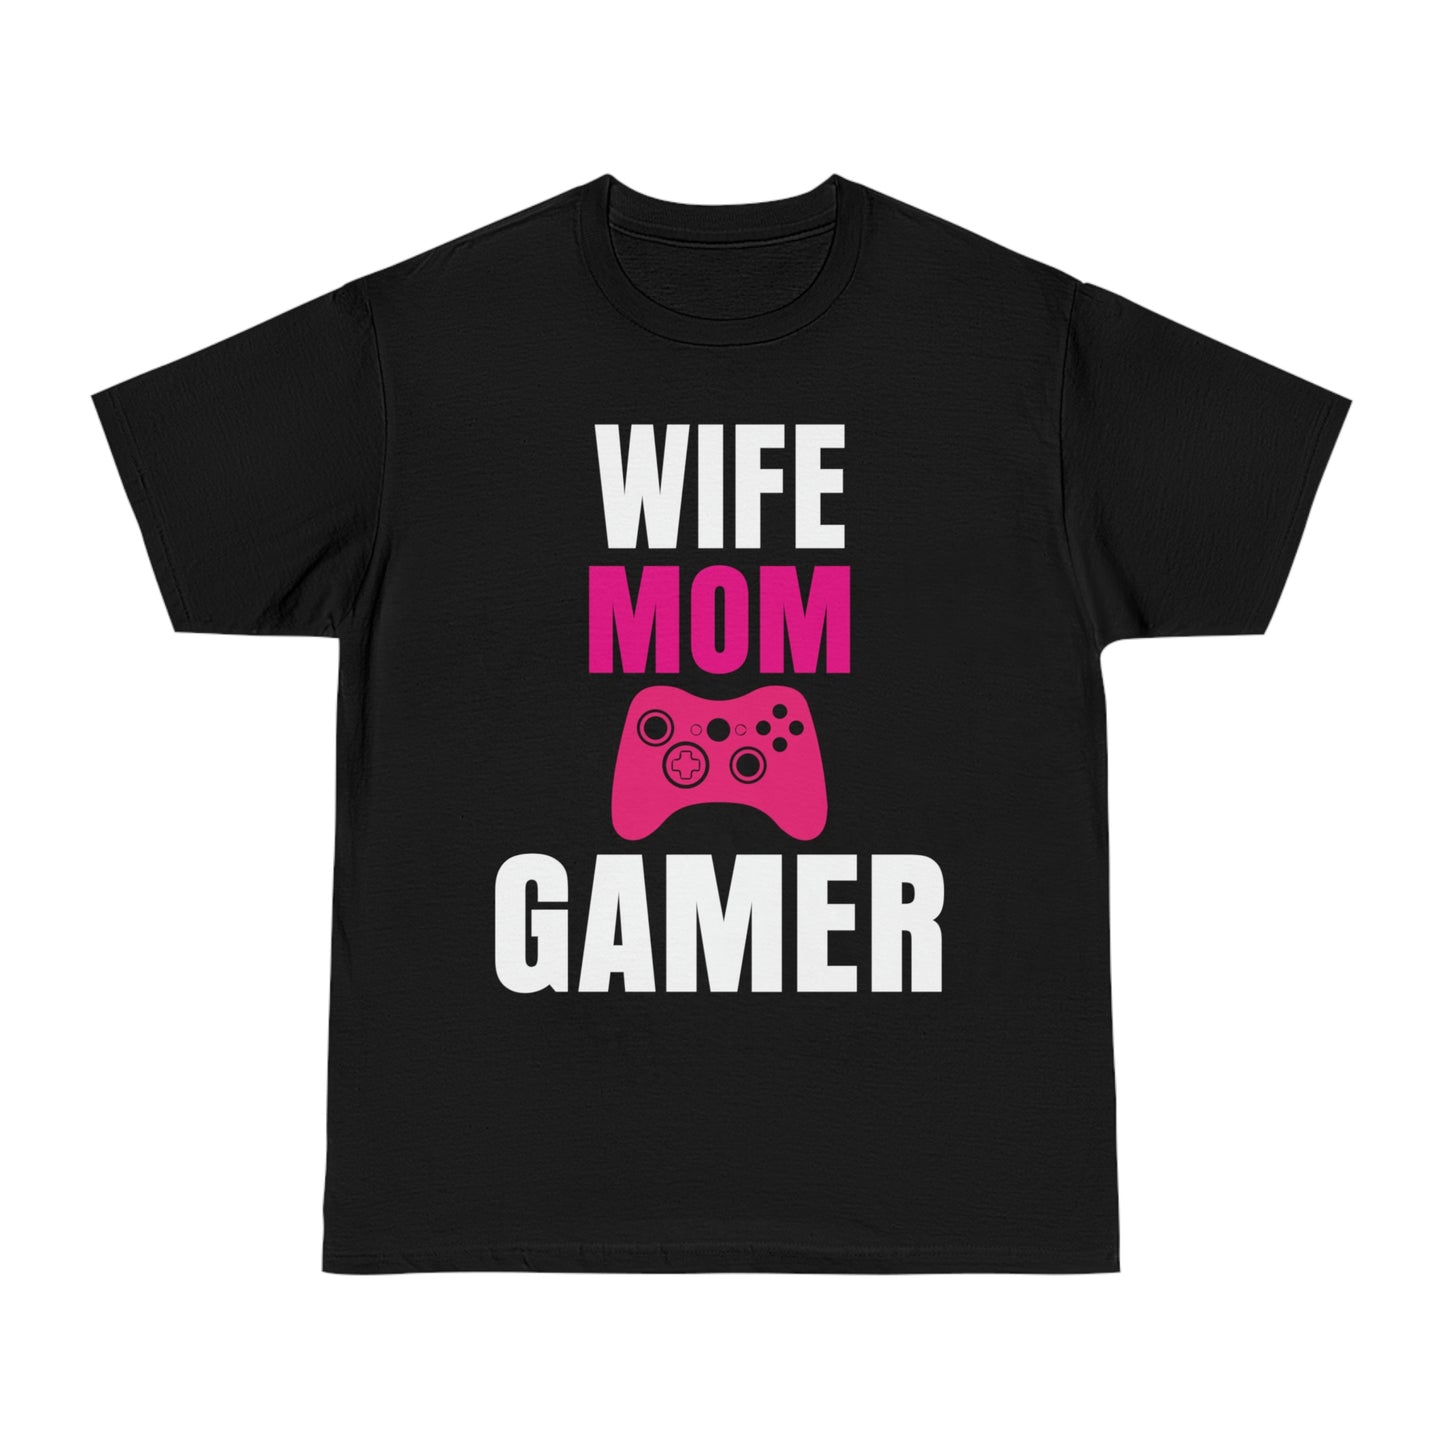 WIFE MOM GAMER